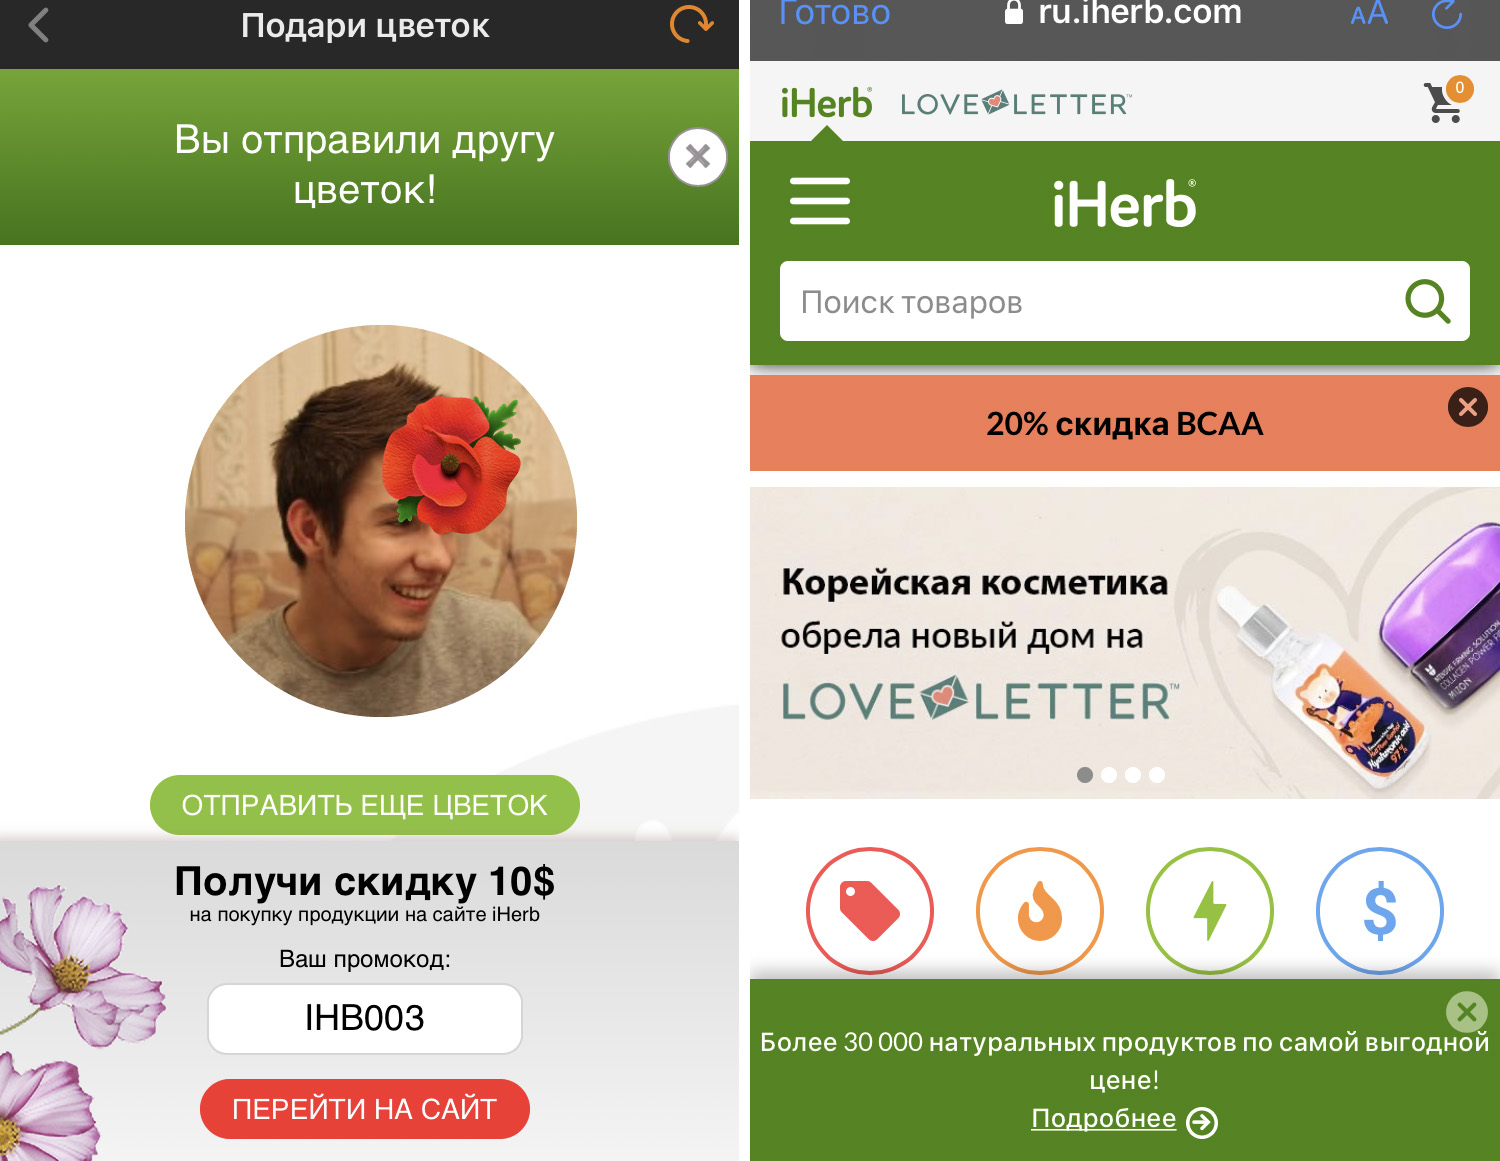 Виральная механика в социальной сети Одноклассники - кейс iHerb